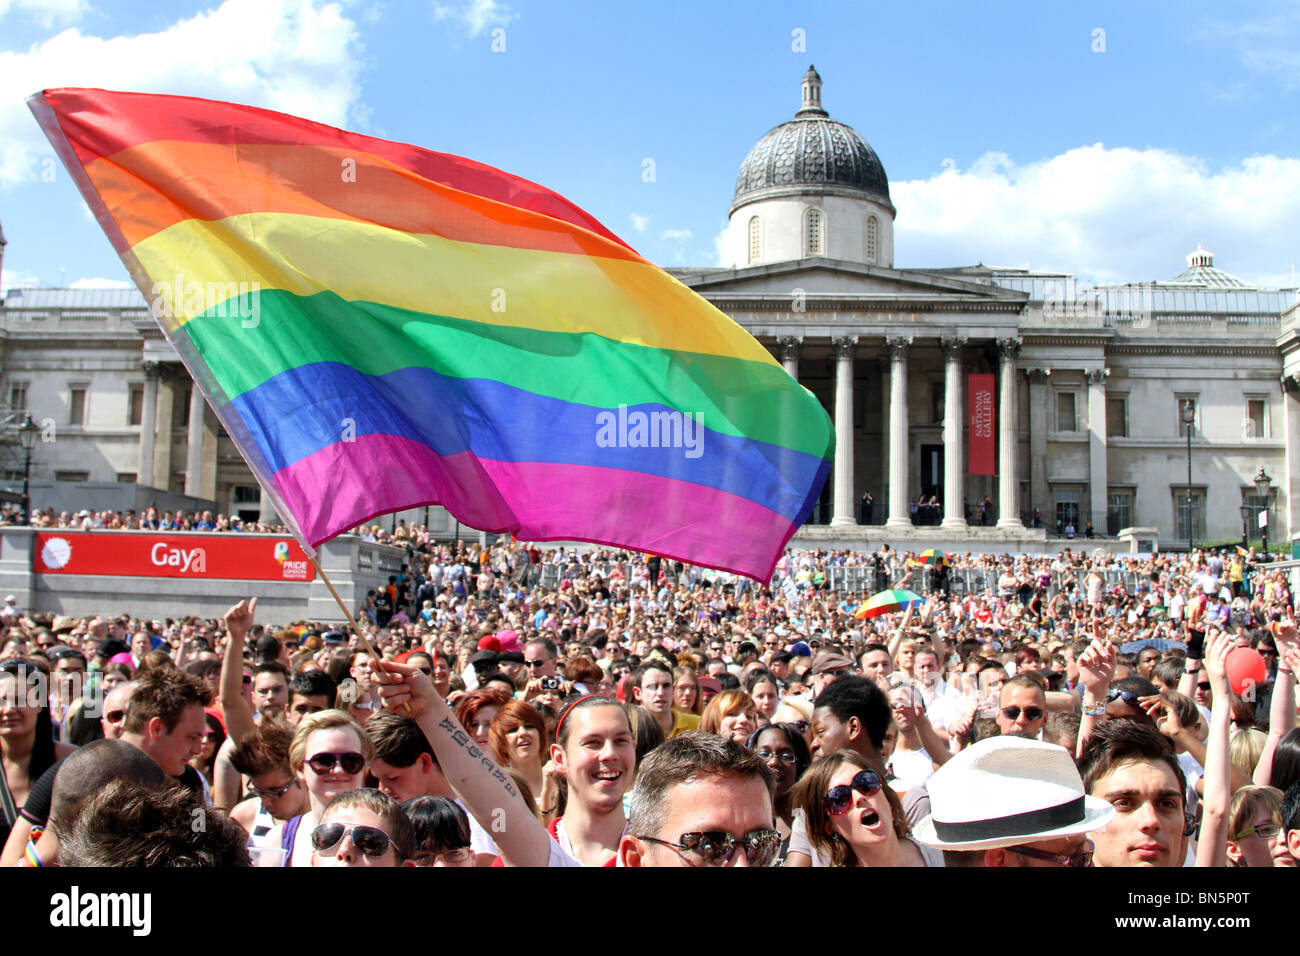 Regenbogenfahne und Publikum auf dem Trafalgar Square an den 40. Jahrestag des Stolzes - Gay-Pride-Parade in London, 3. Juli 2010 Stockfoto